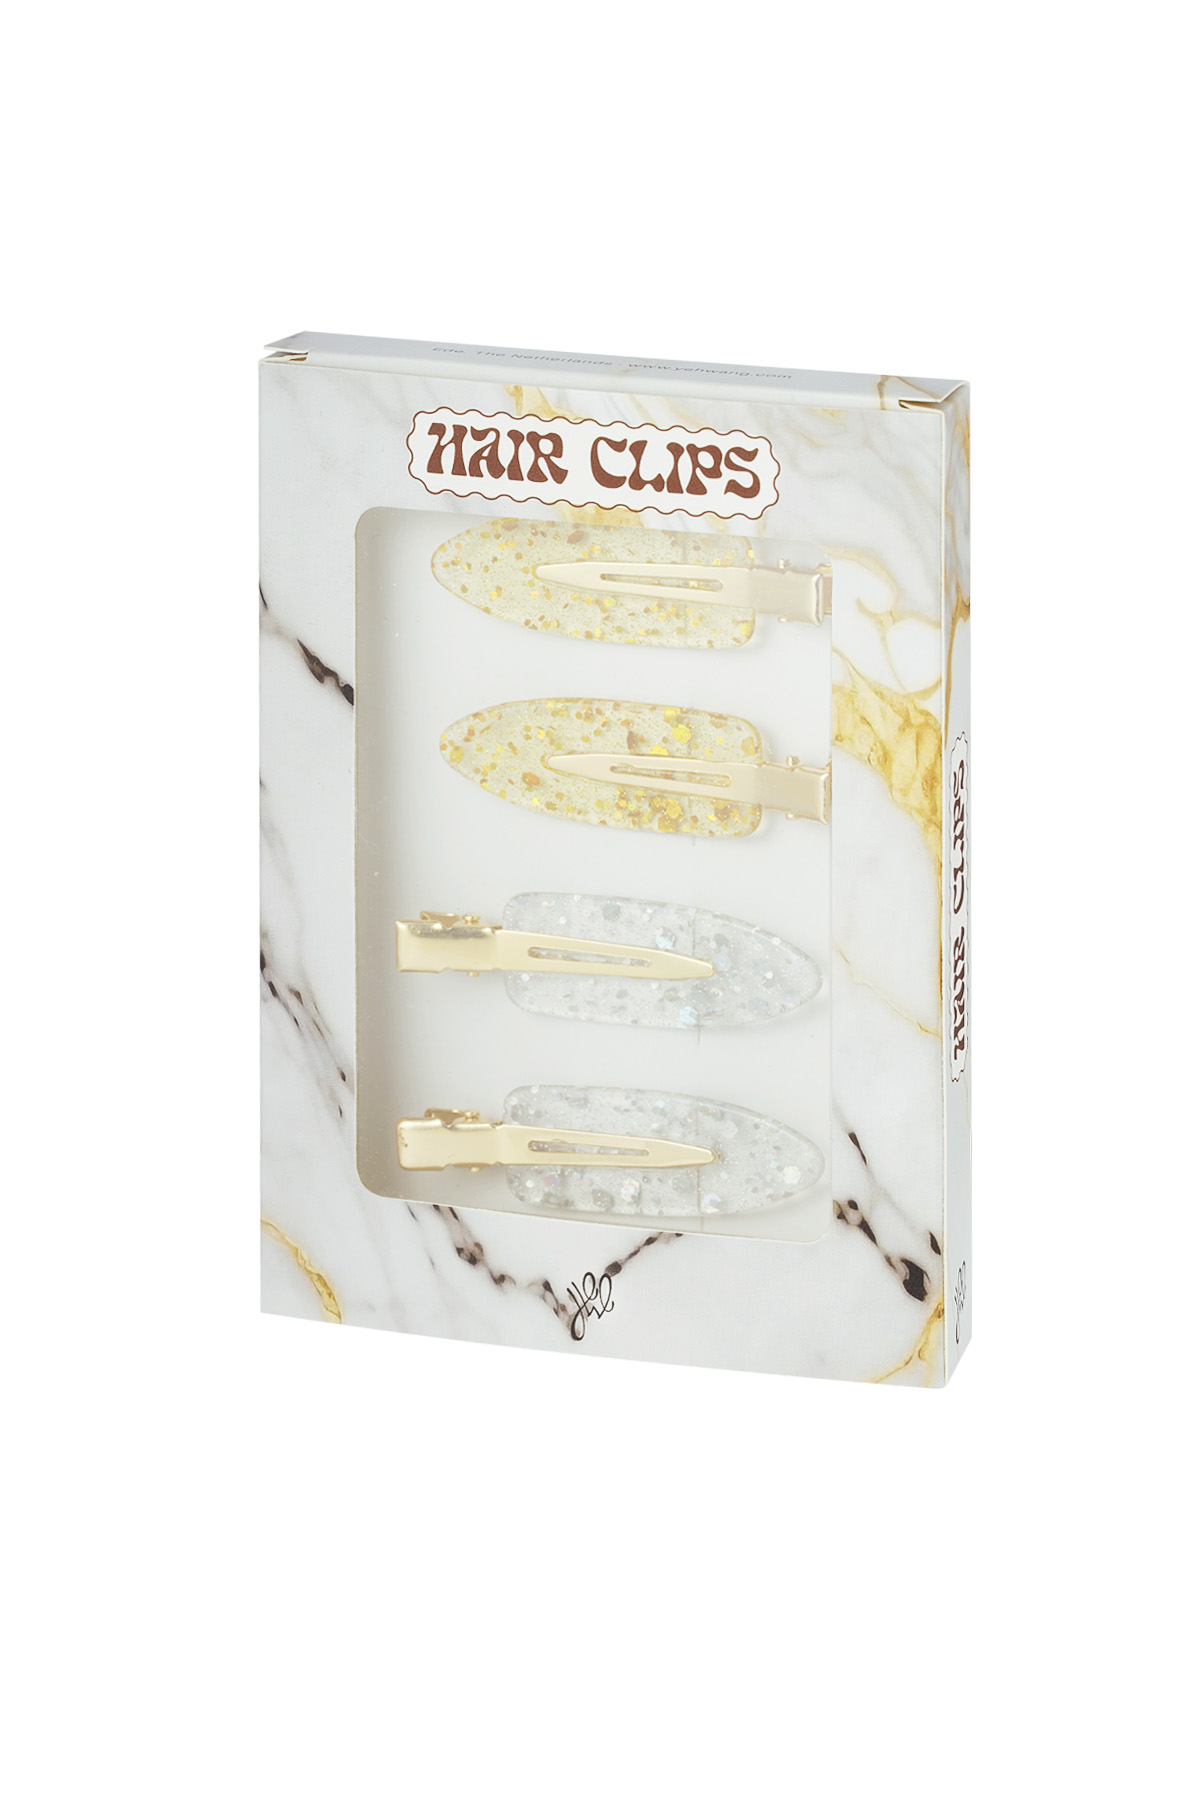 Hair clip box marble - gold silver